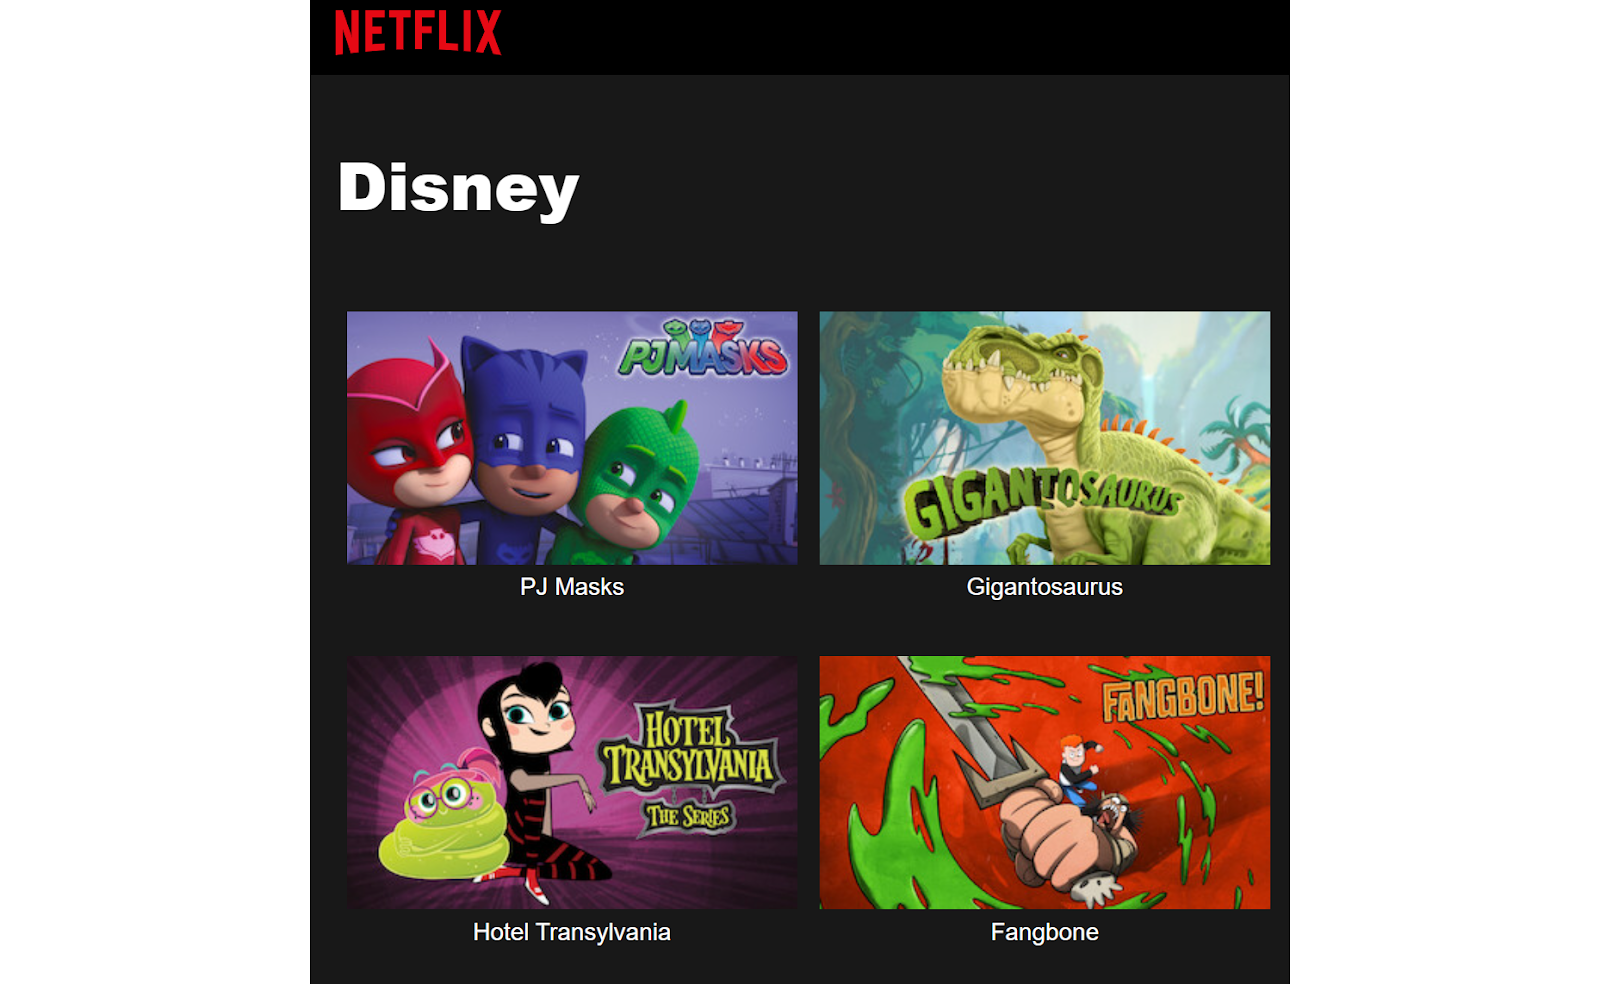 Códigos secretos da Netflix para 2023